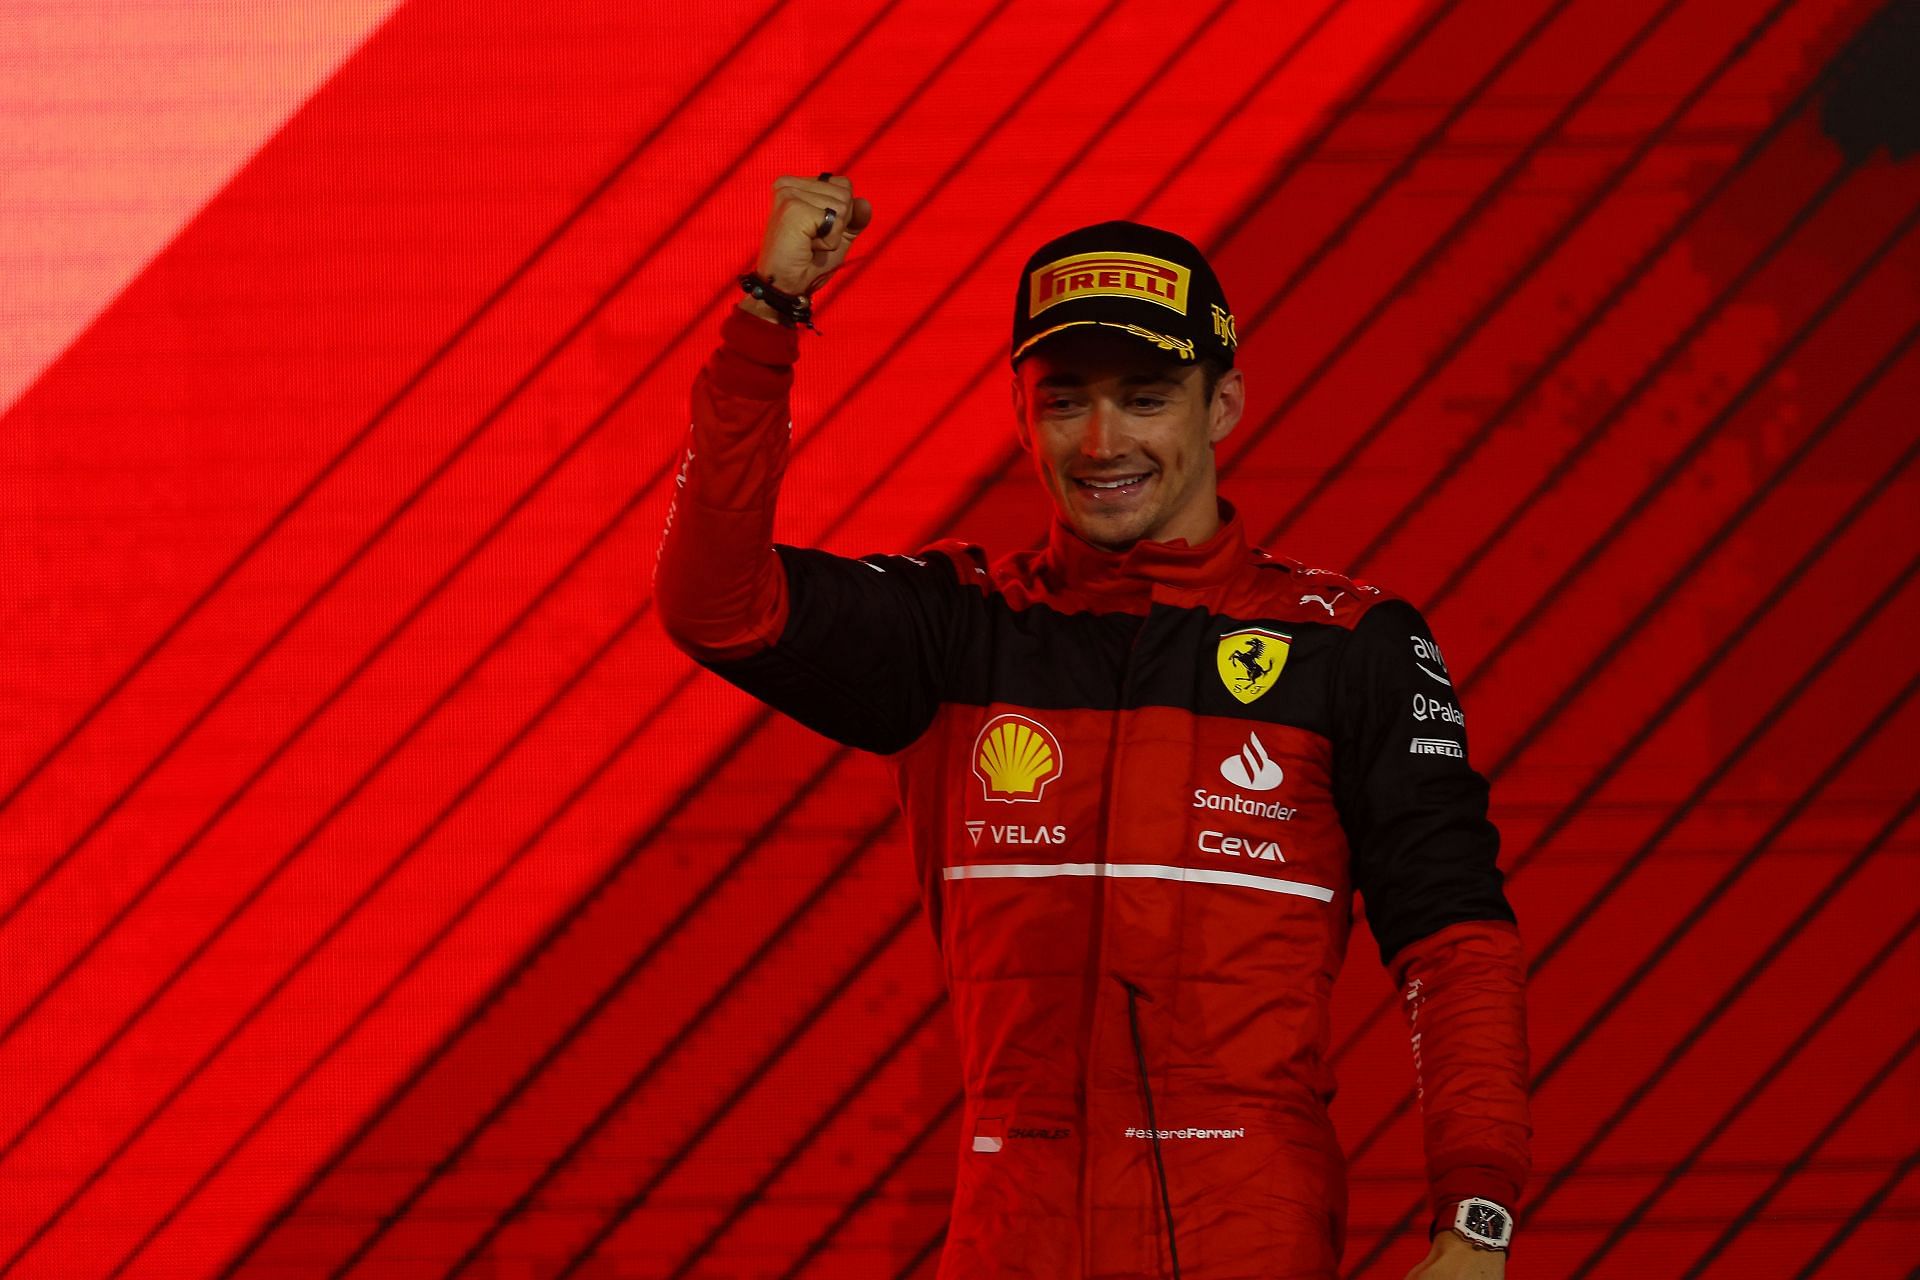 Charles Leclerc led a Ferrari 1-2 in the Bahrain GP